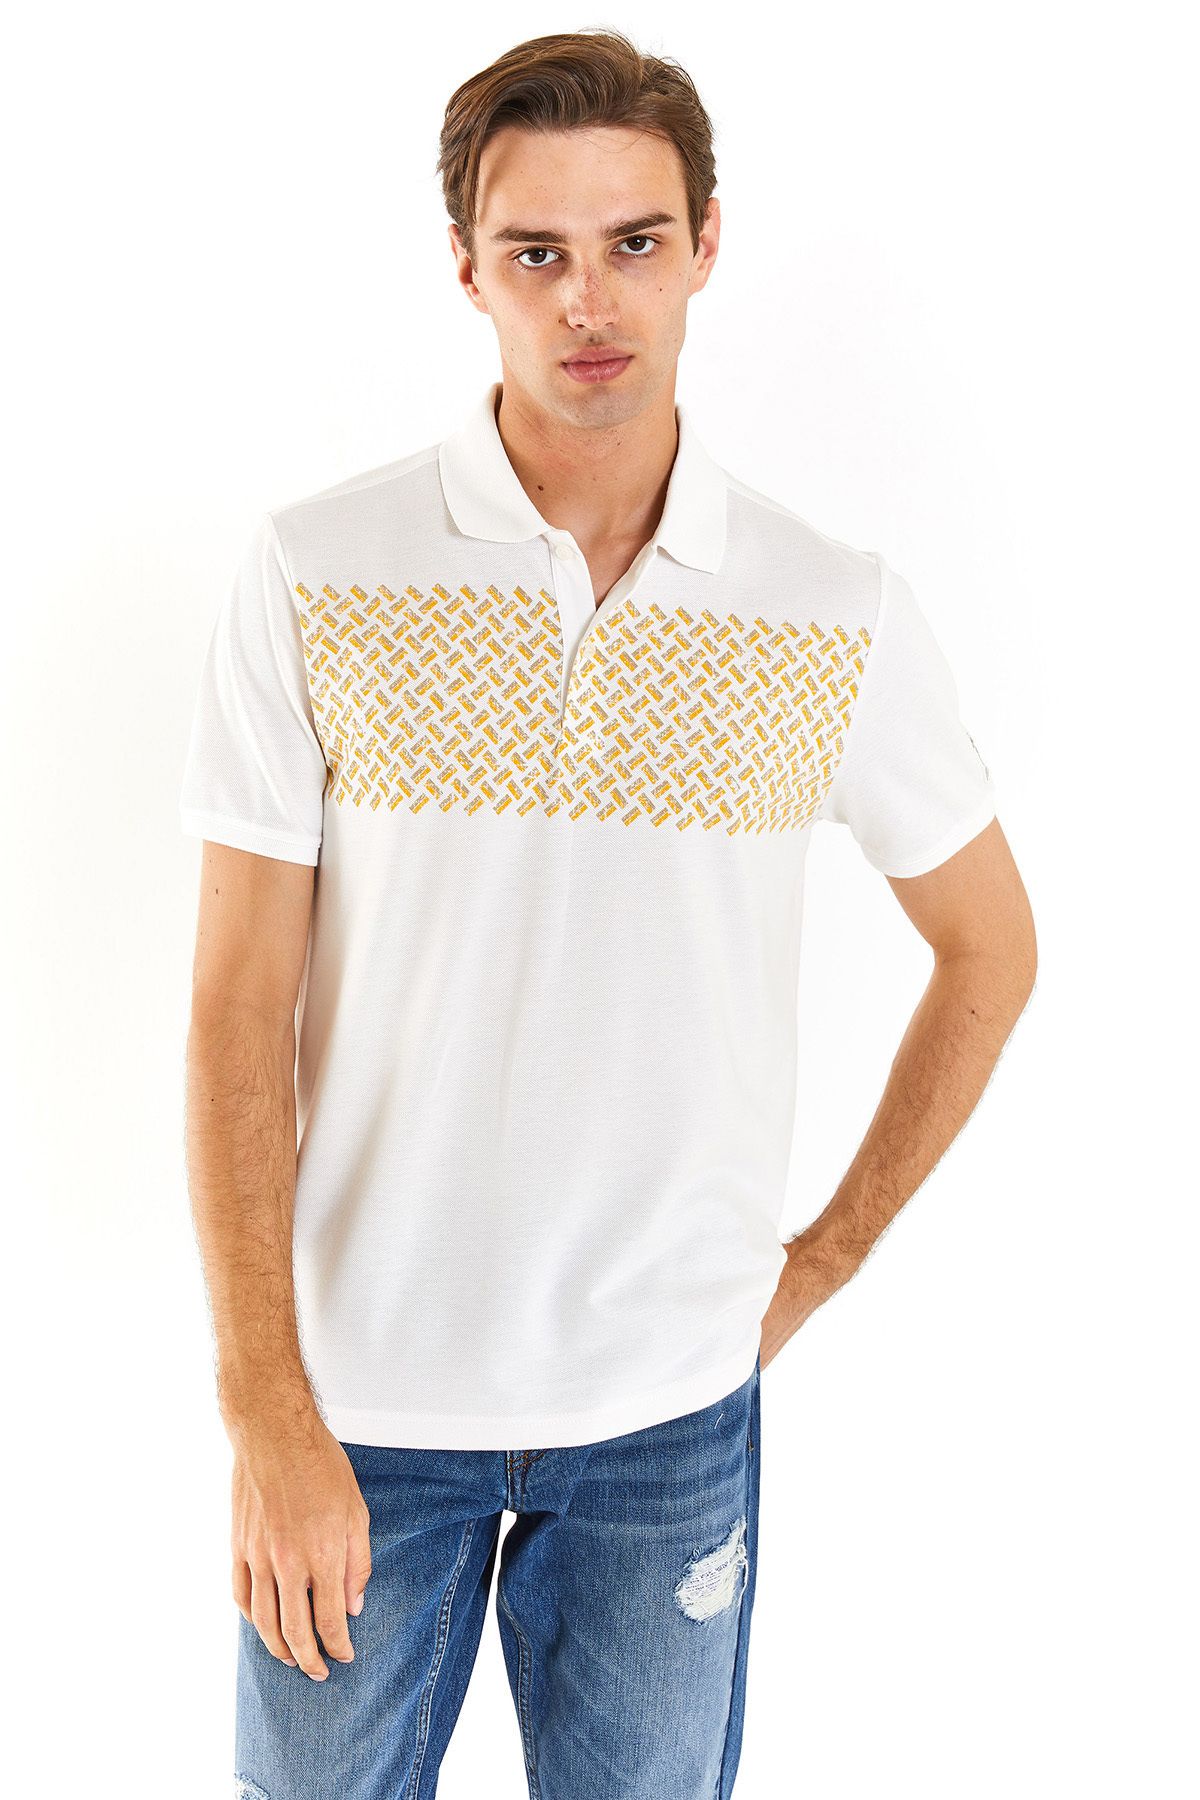 U.S. Polo Assn. Erkek Kısa Kol %100 Pamuk T-Shirt 1826904